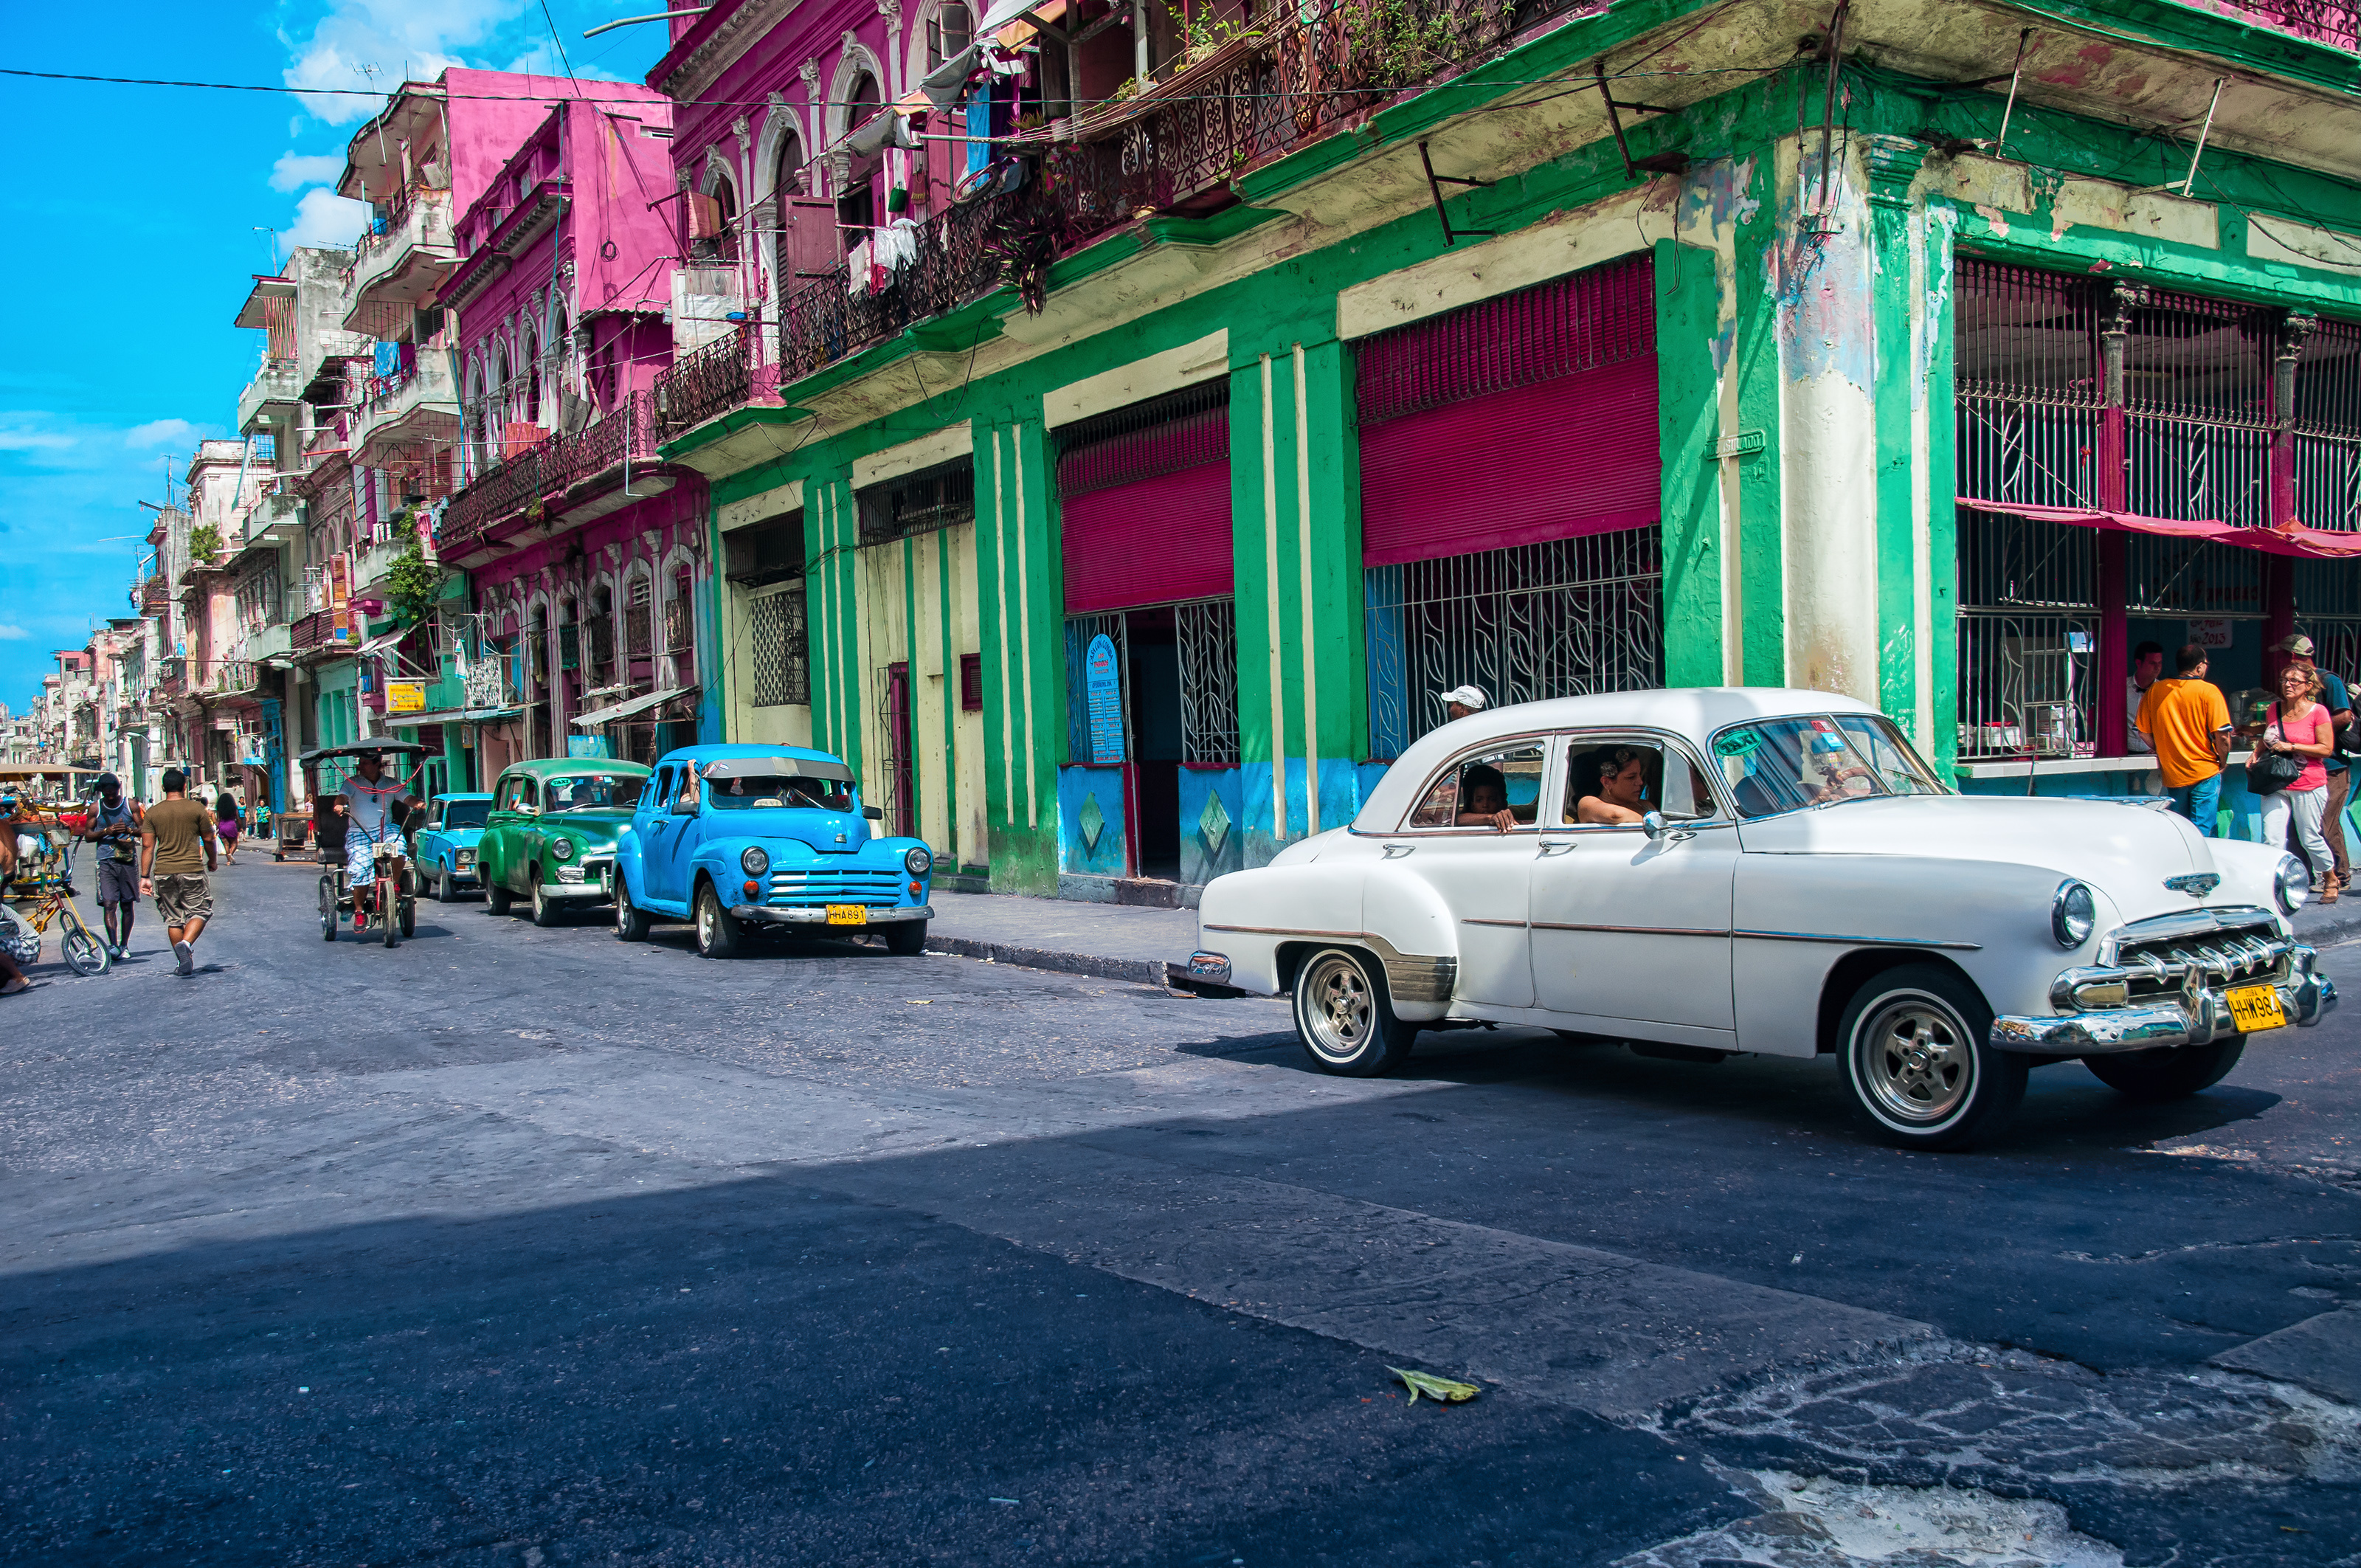 Widescreen Havana images, Desktop delight, Mobile wallpapers, High-quality, 3200x2130 HD Desktop